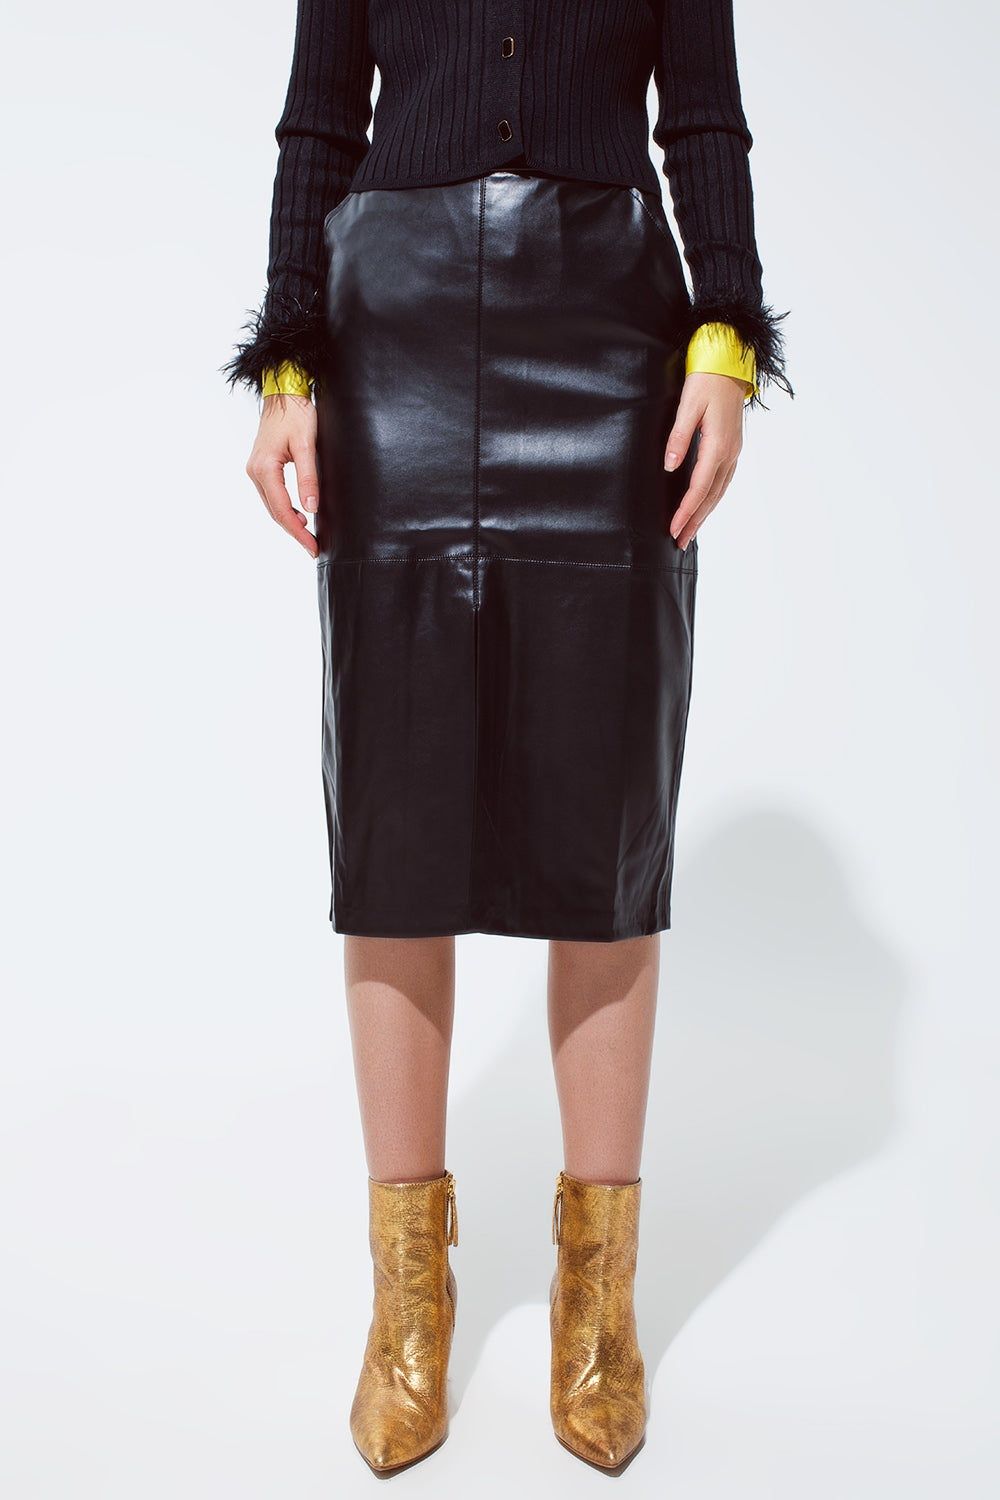 TEEK - Black Leatherette Pencil Cut Skirt SKIRT TEEK M   